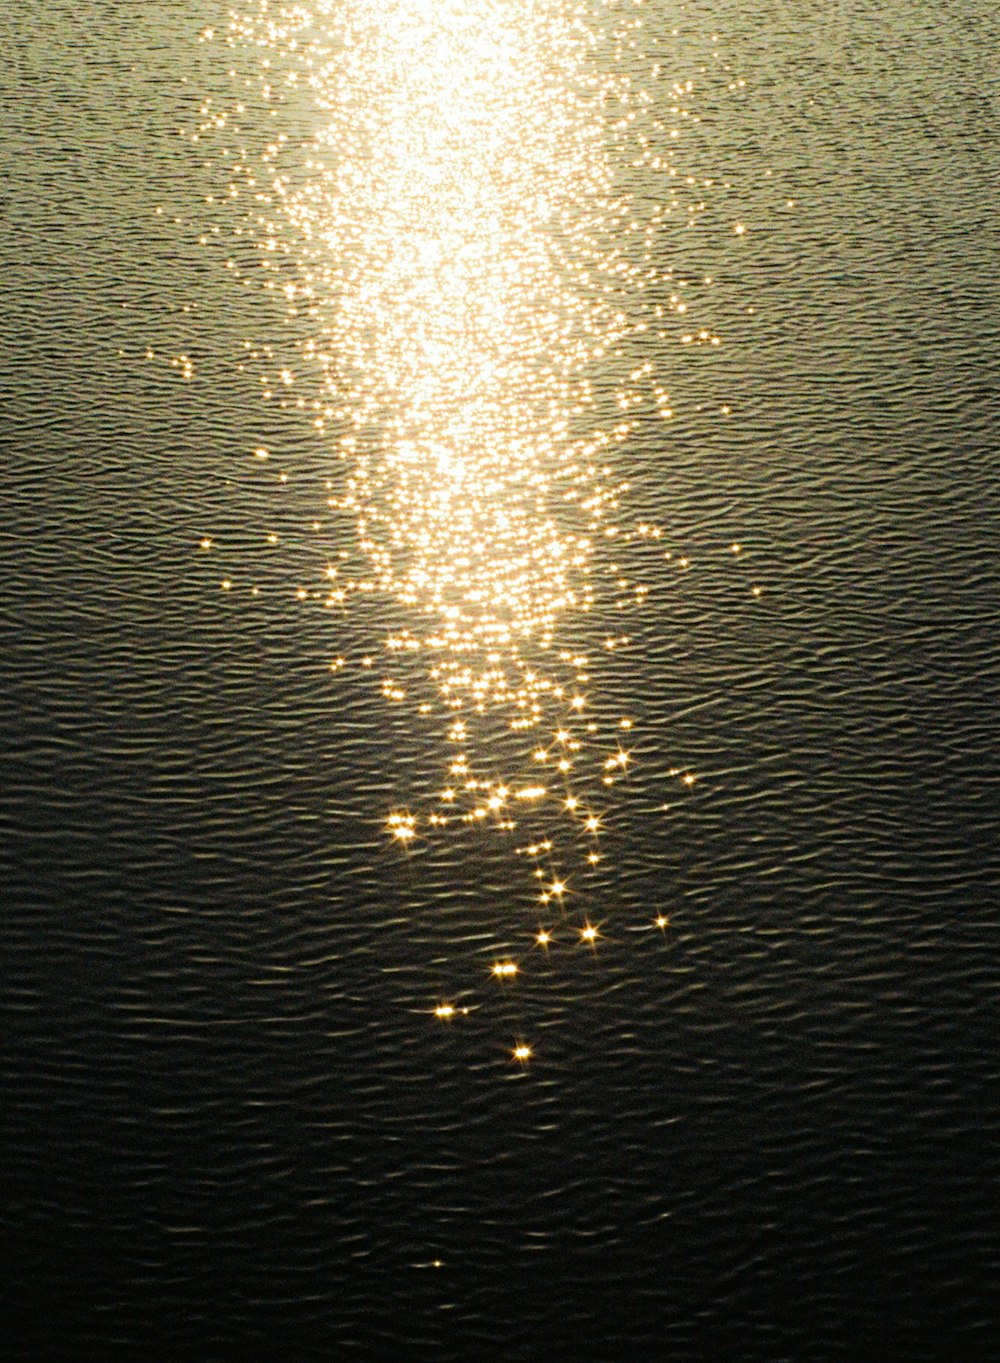 il sole splende luminoso sull'acqua